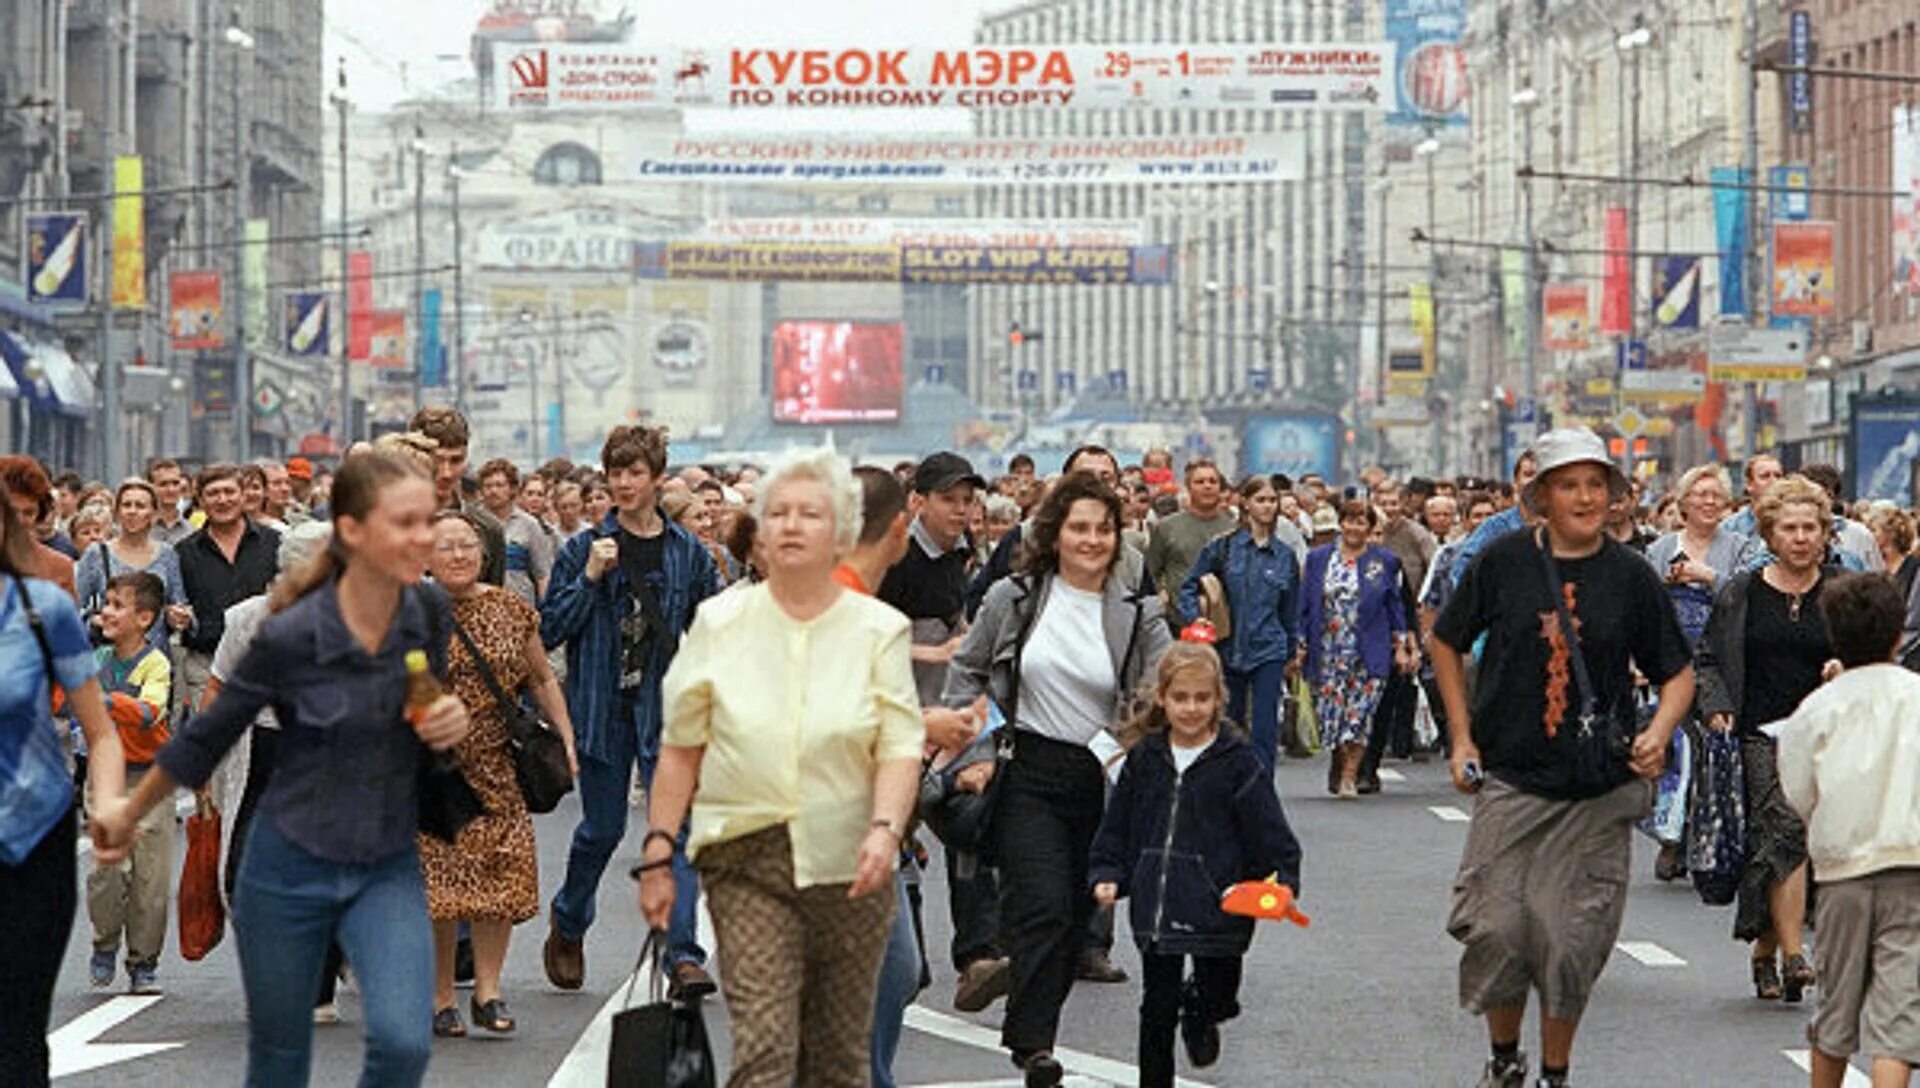 Люди на улице. Толпа людей в Москве. Люди на улице города. Люди в городе. В москве проживает человек